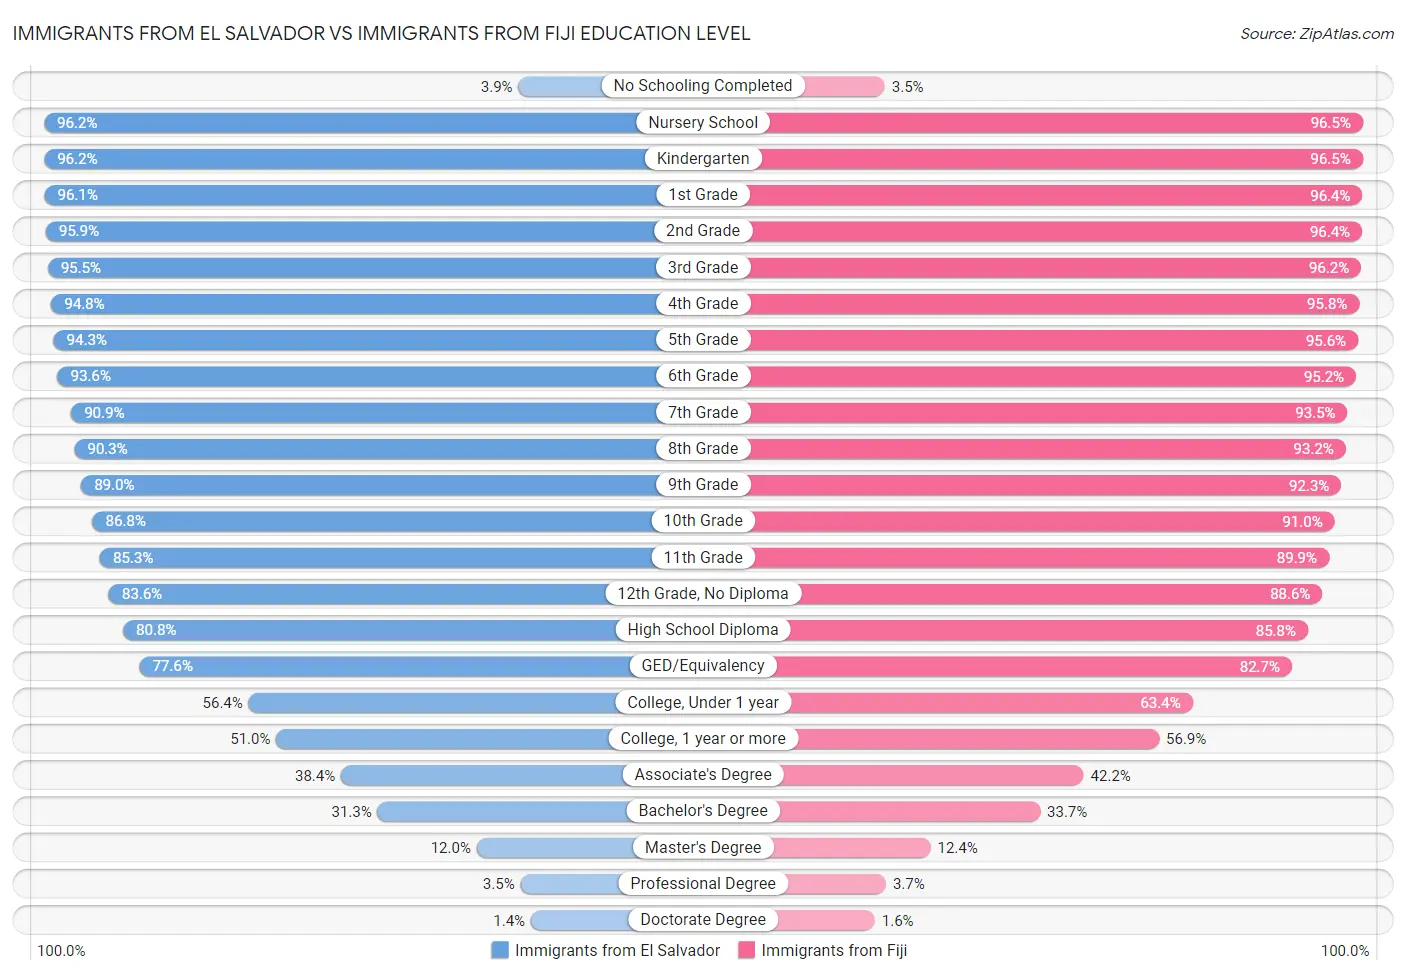 Immigrants from El Salvador vs Immigrants from Fiji Education Level